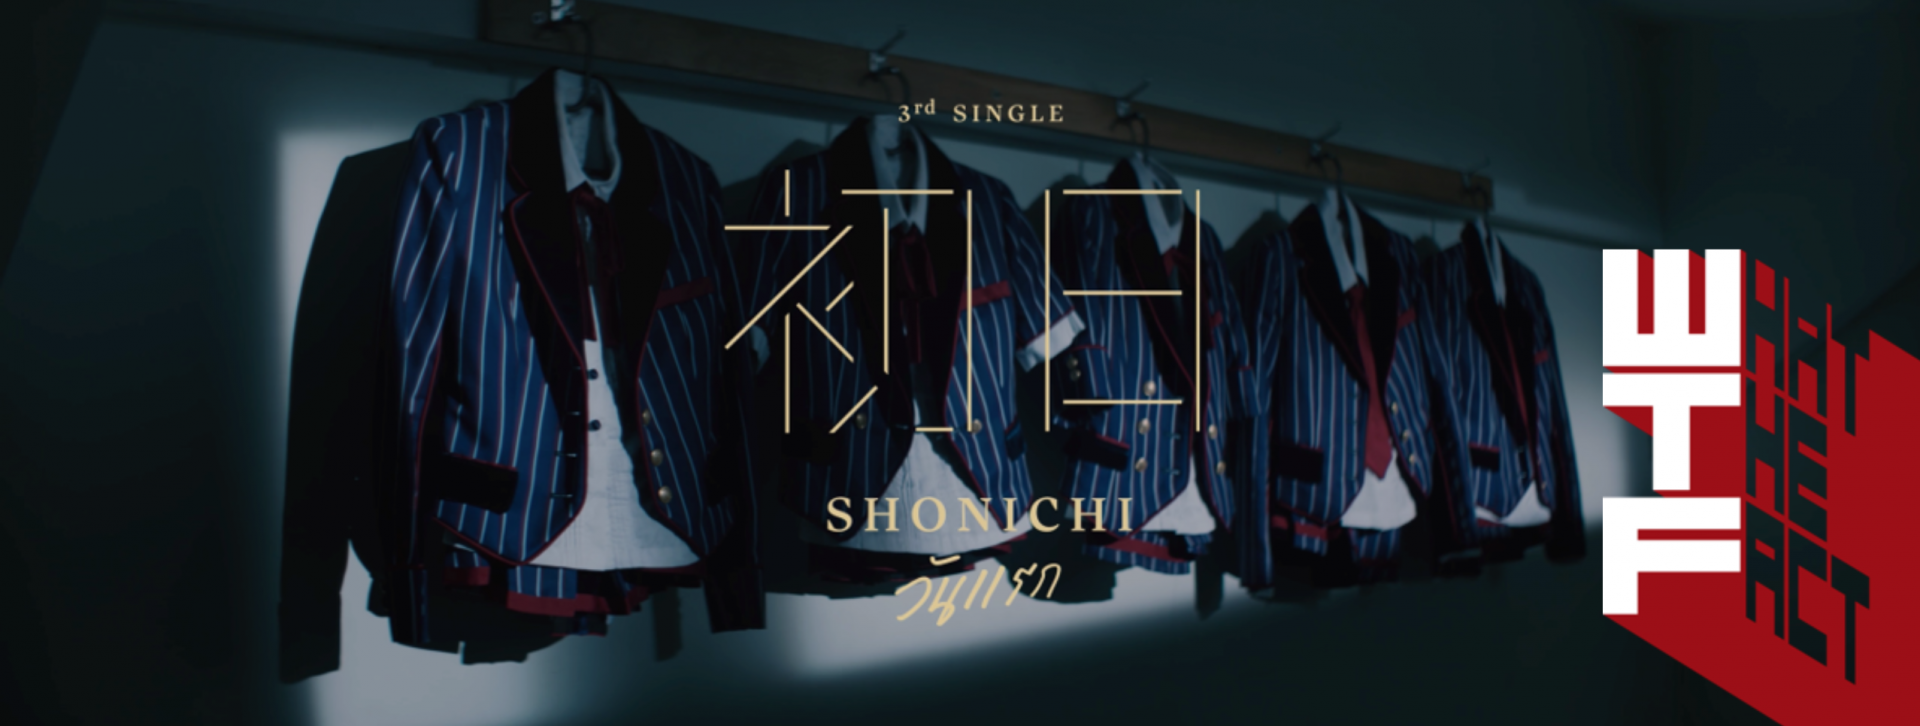 “Shonichi The Stories” จดจำ “วันแรก” ของความฝันแล้วจงทำมันให้สำเร็จ !!!